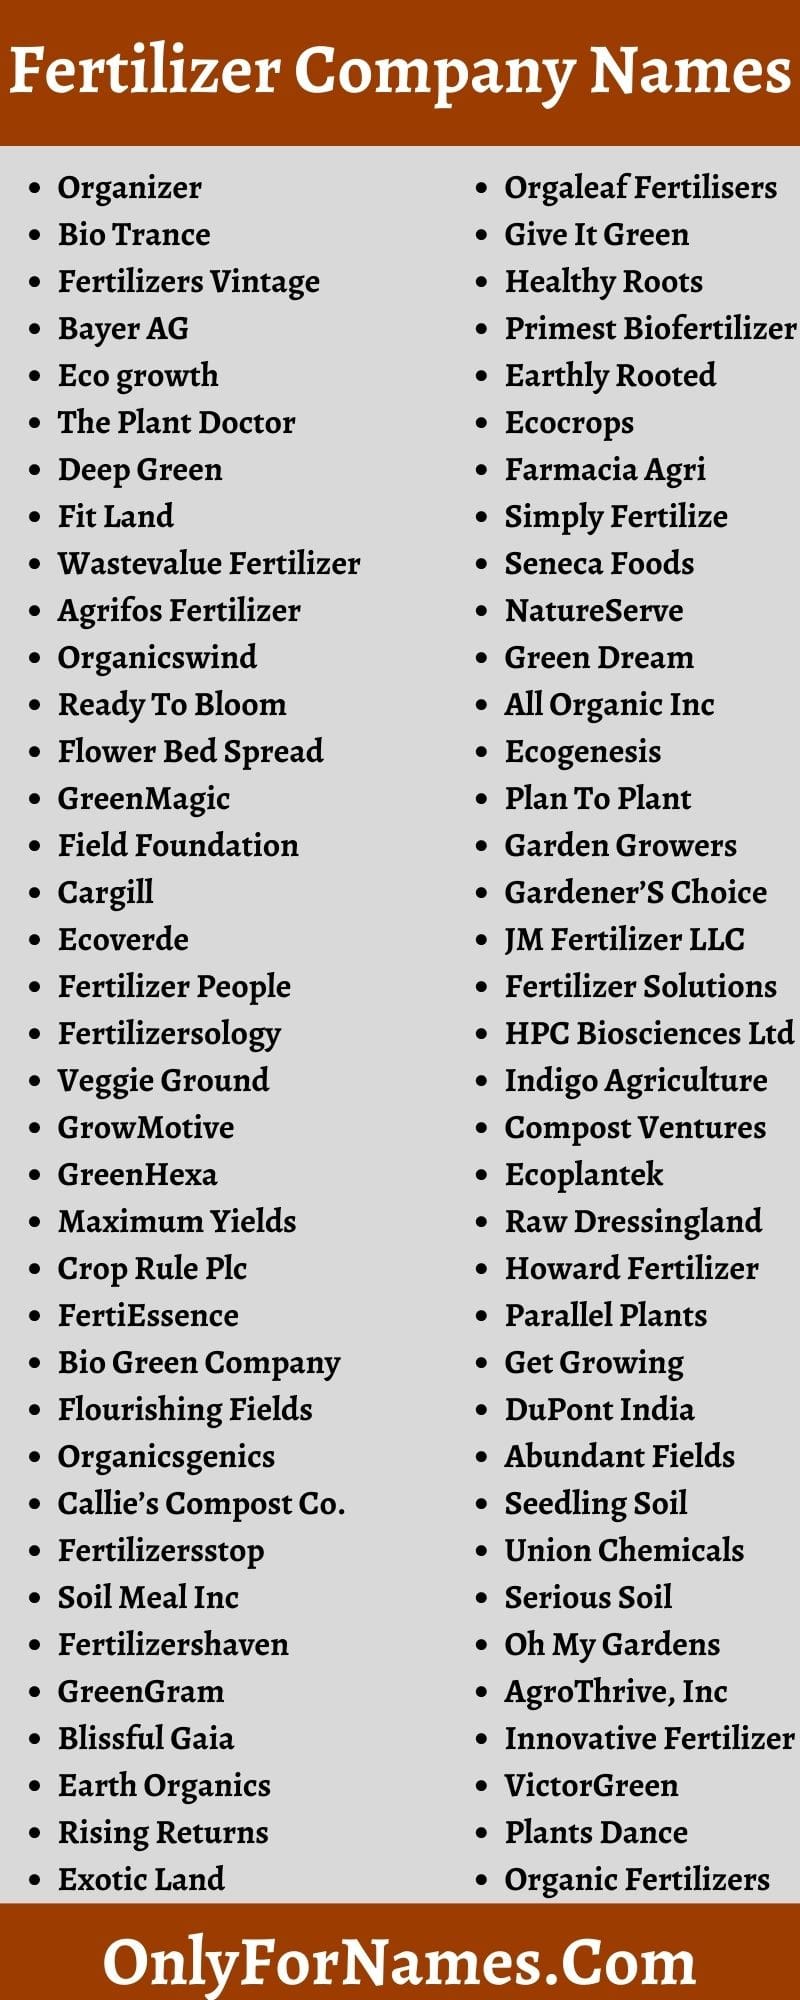 Fertilizer Company Names